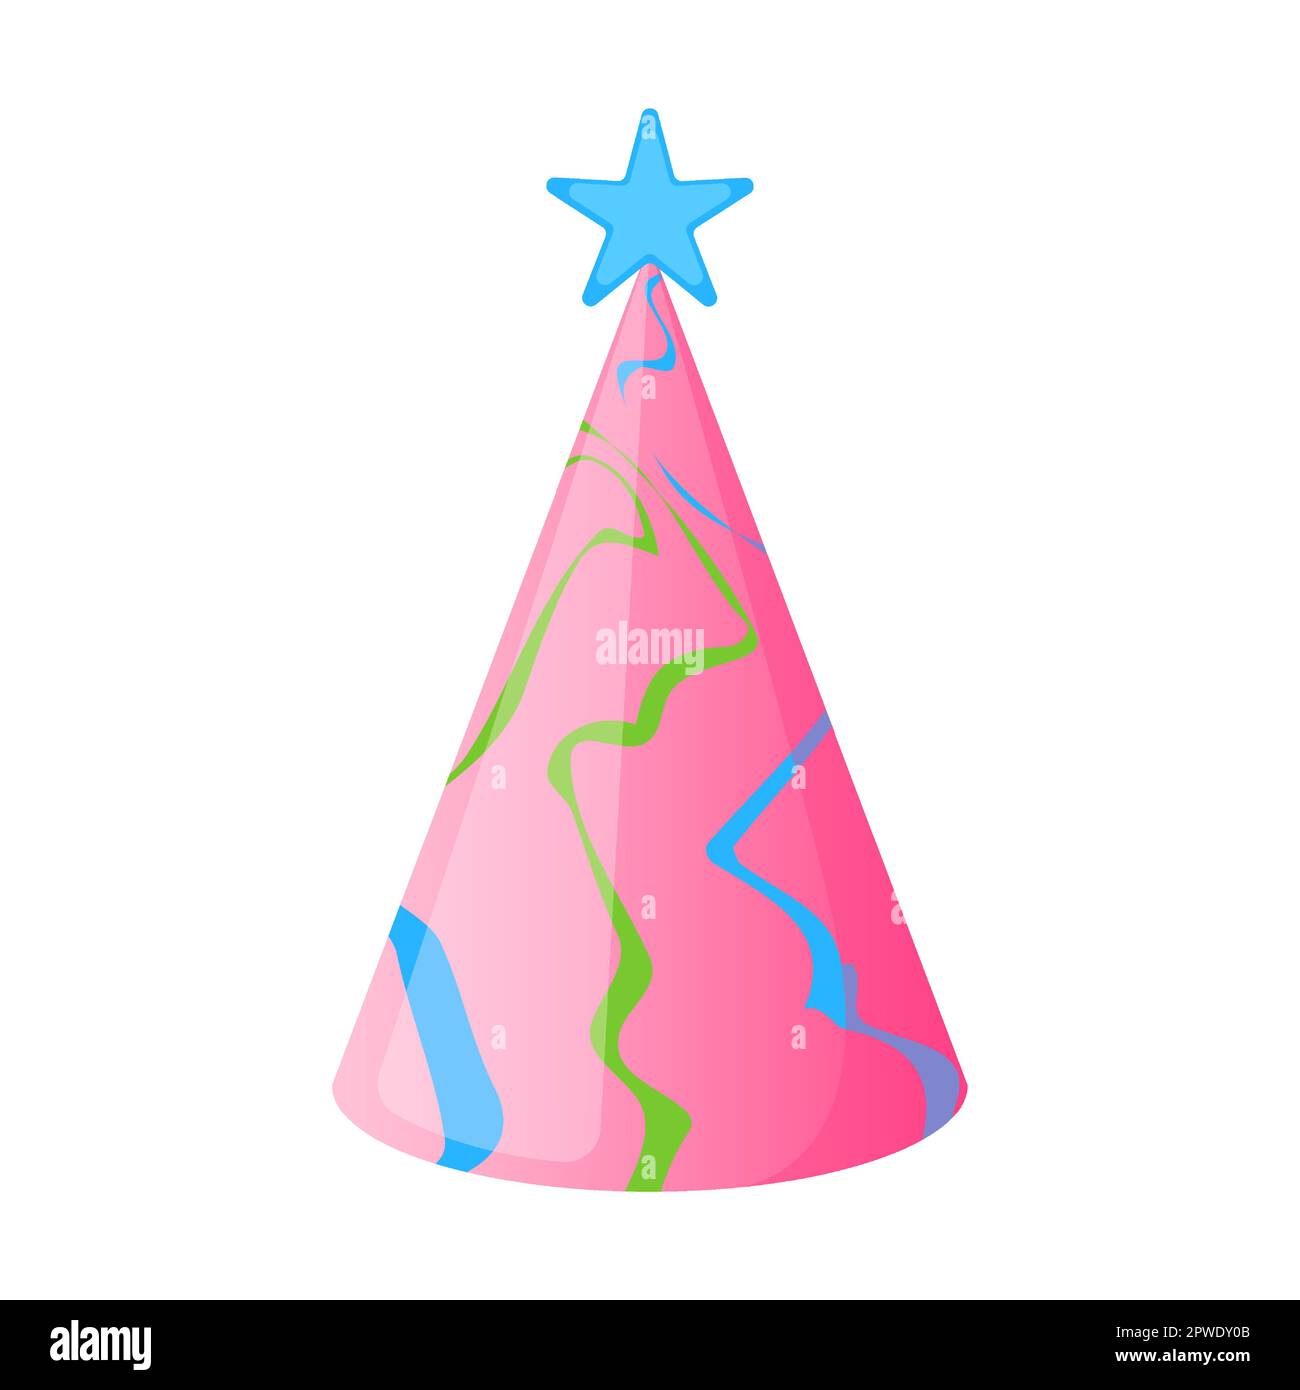 Casquette conique colorée avec étoile sur le dessus et rayures courbes abstraites pour une fête d'anniversaire heureuse. Illustration vectorielle d'un chapeau en papier pour enfants pour le carnaval Illustration de Vecteur